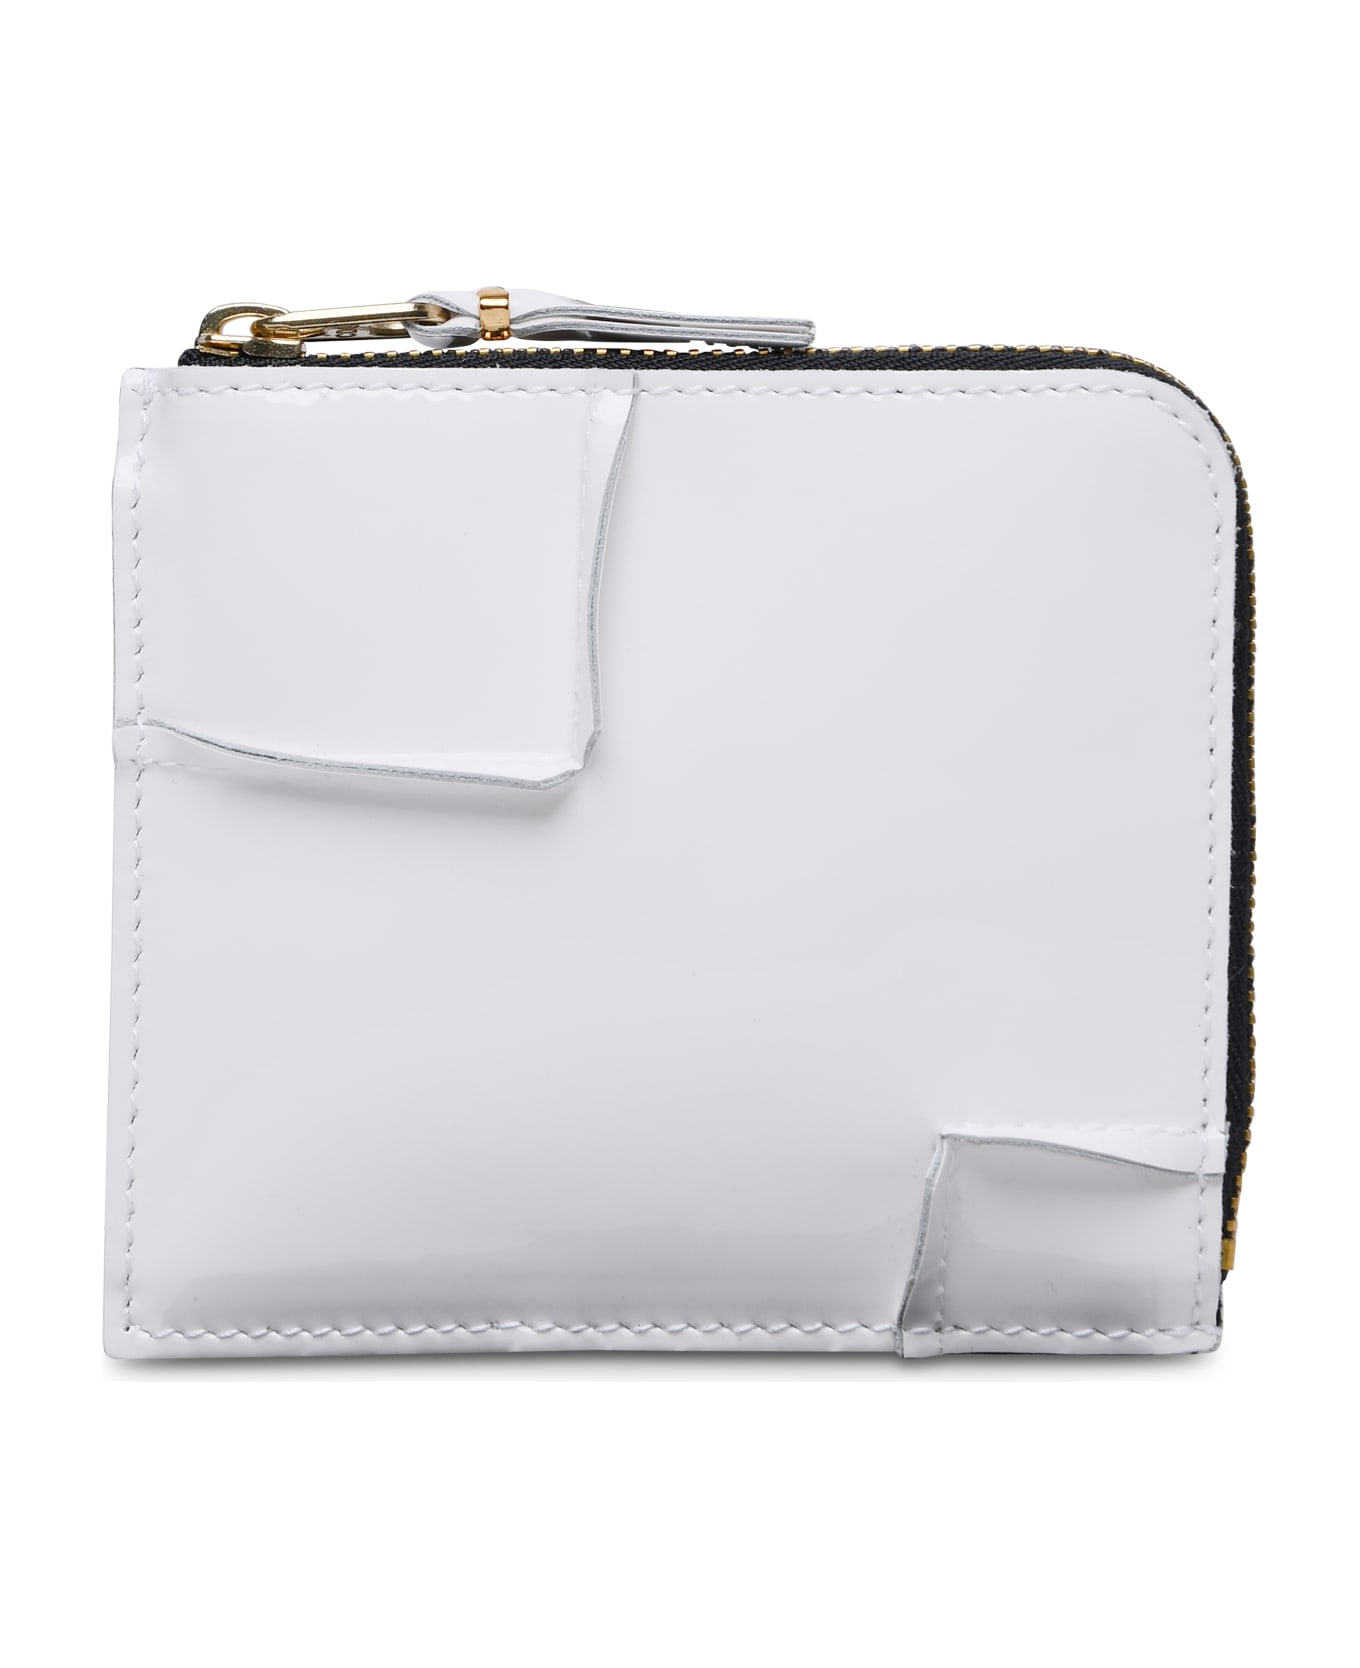 Comme des Garçons Wallet 'medley' White Leather Wallet - White 財布